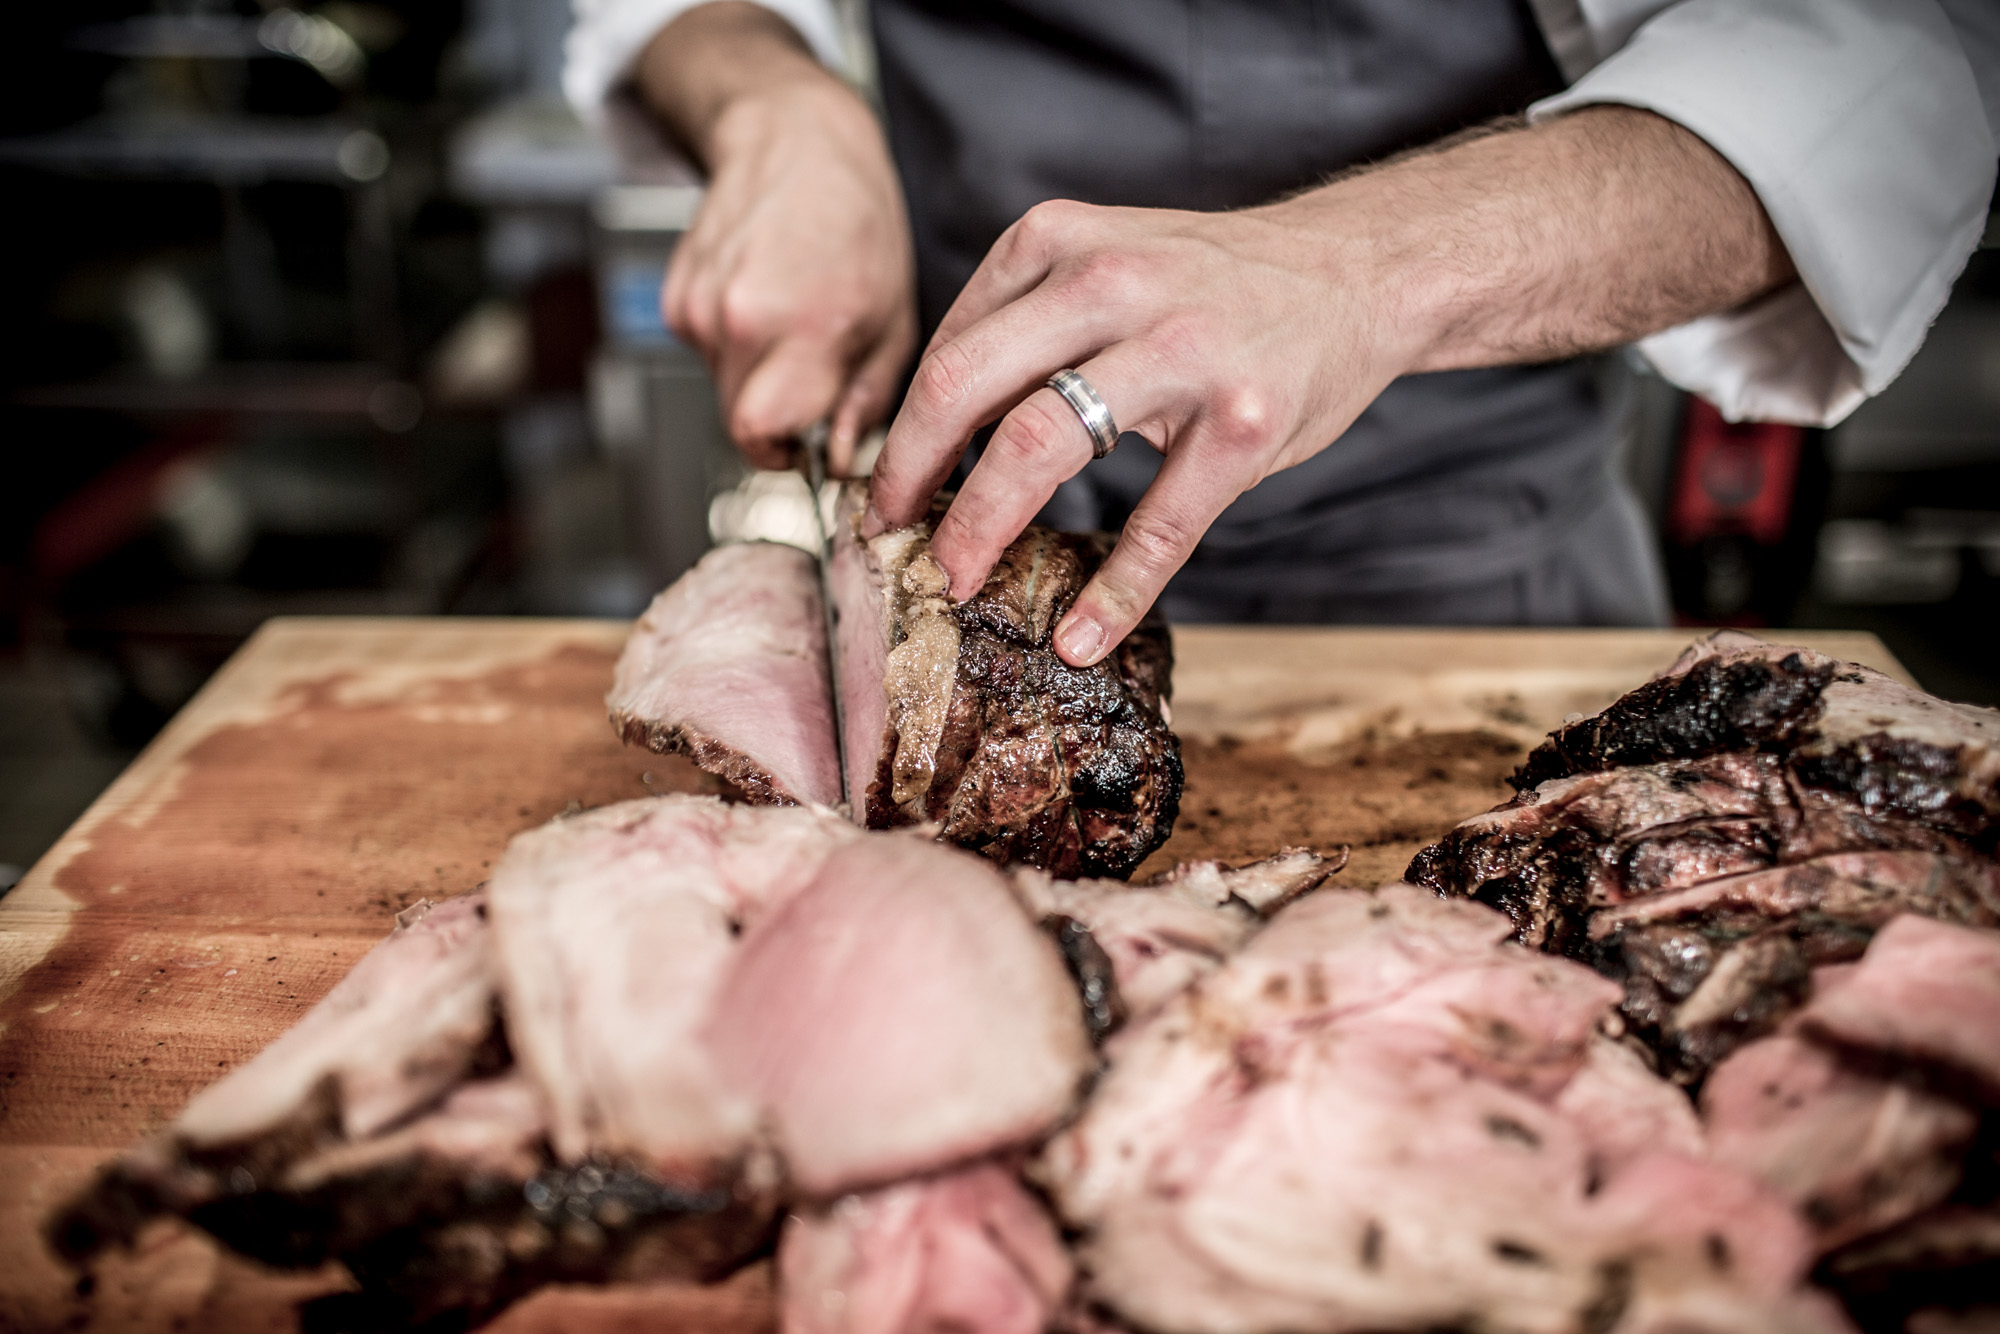 chef cutting up pork roast on cutting board